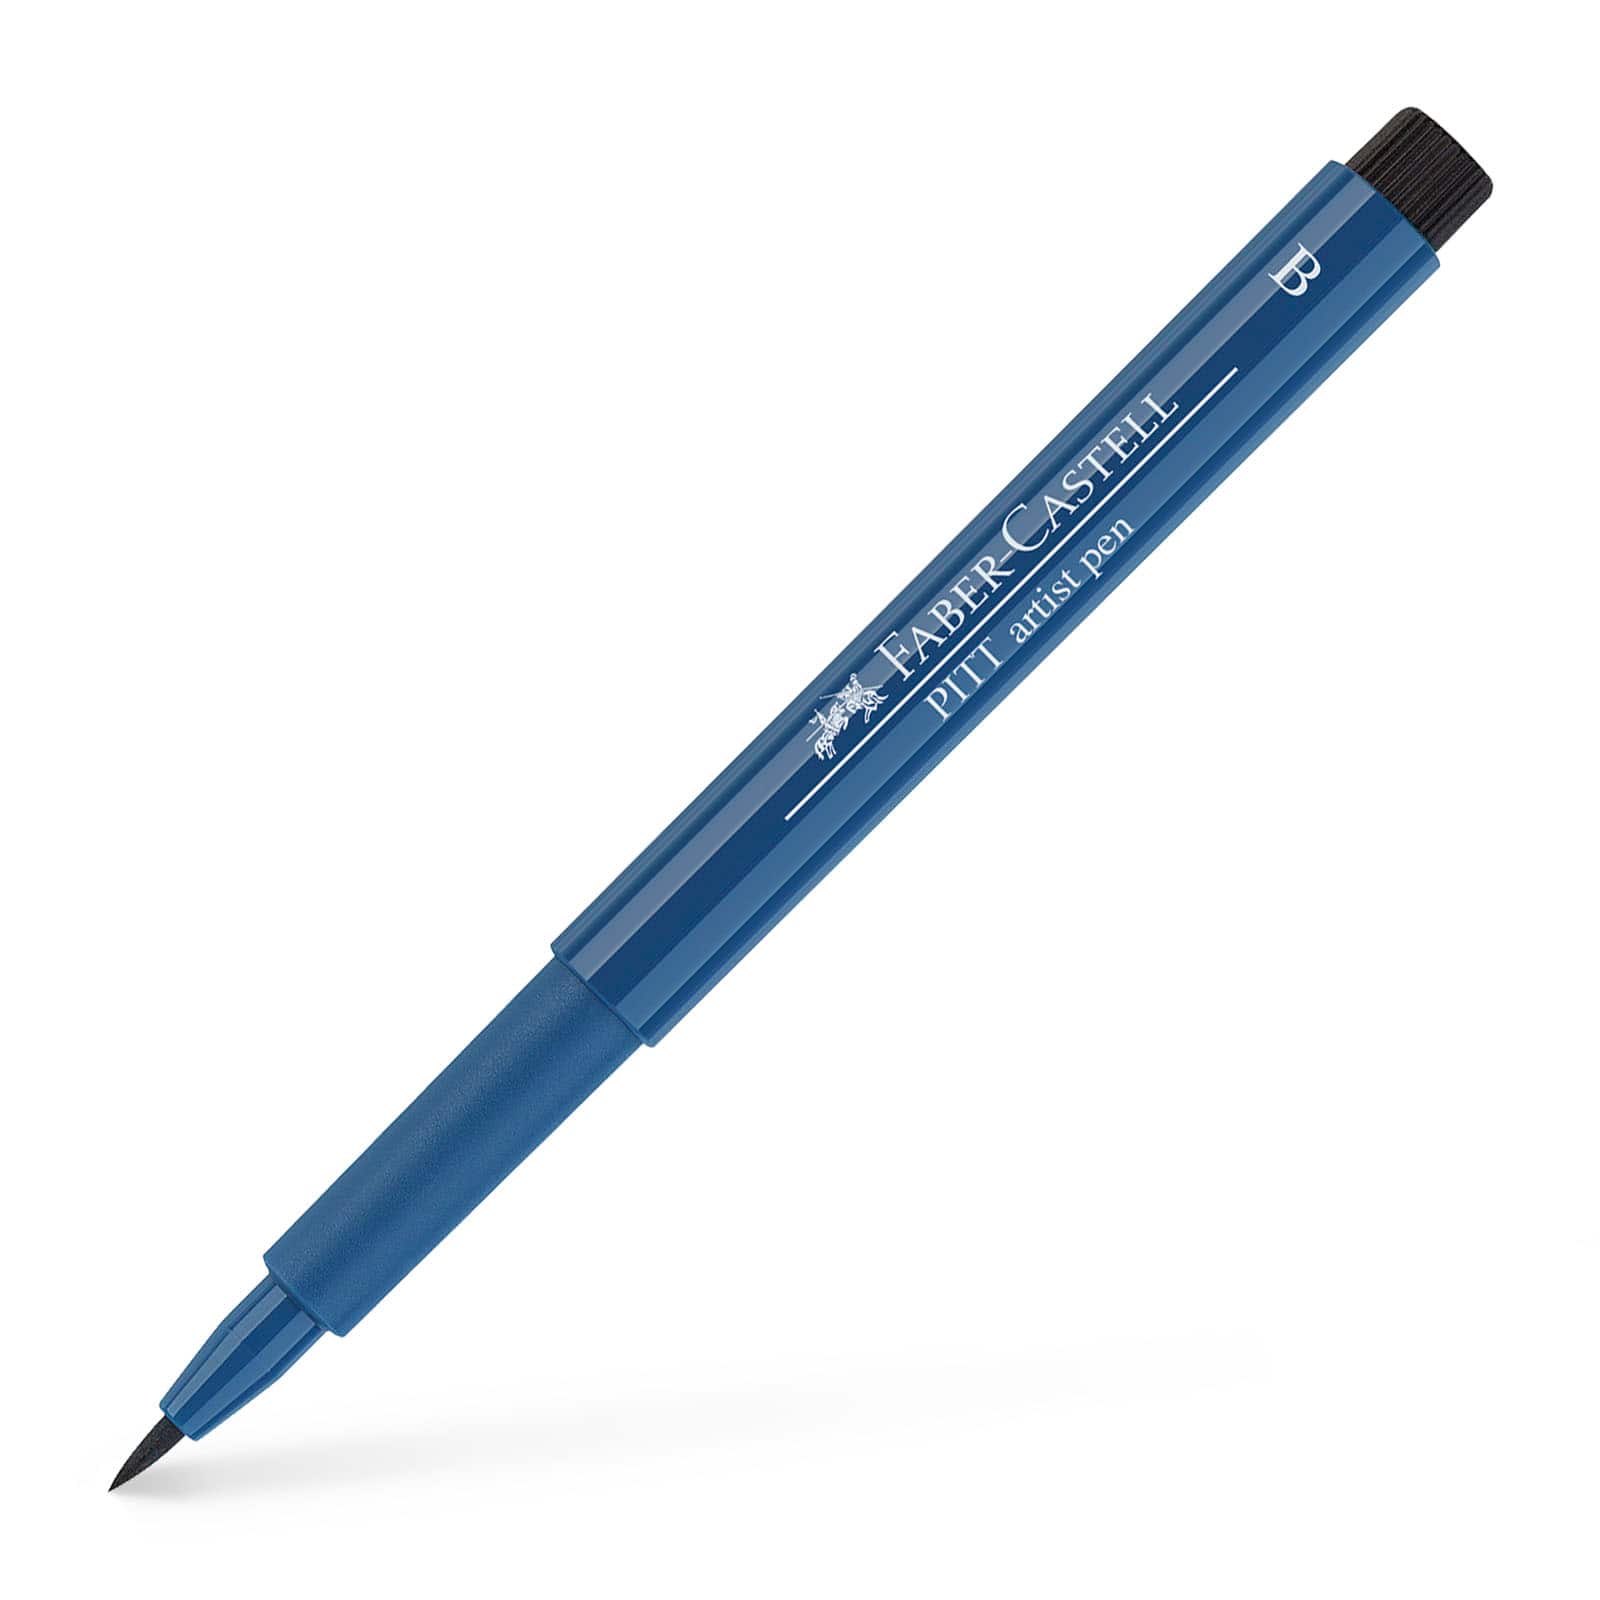 Faber-Castell&#xAE; PITT&#xAE; Brush Artist Pen